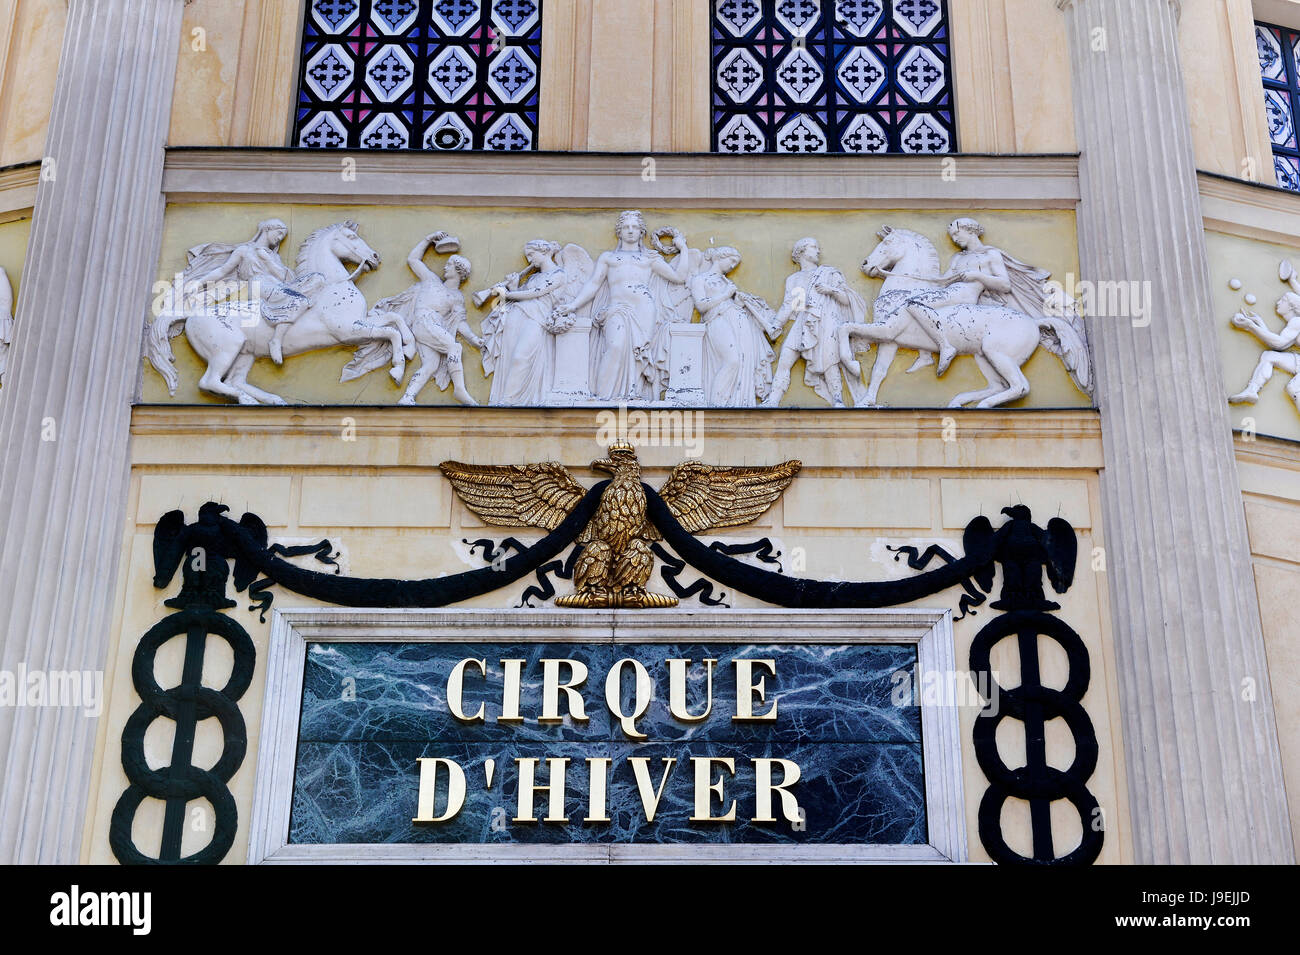 Cirque d'hiver Bouglione, Paris, France Banque D'Images